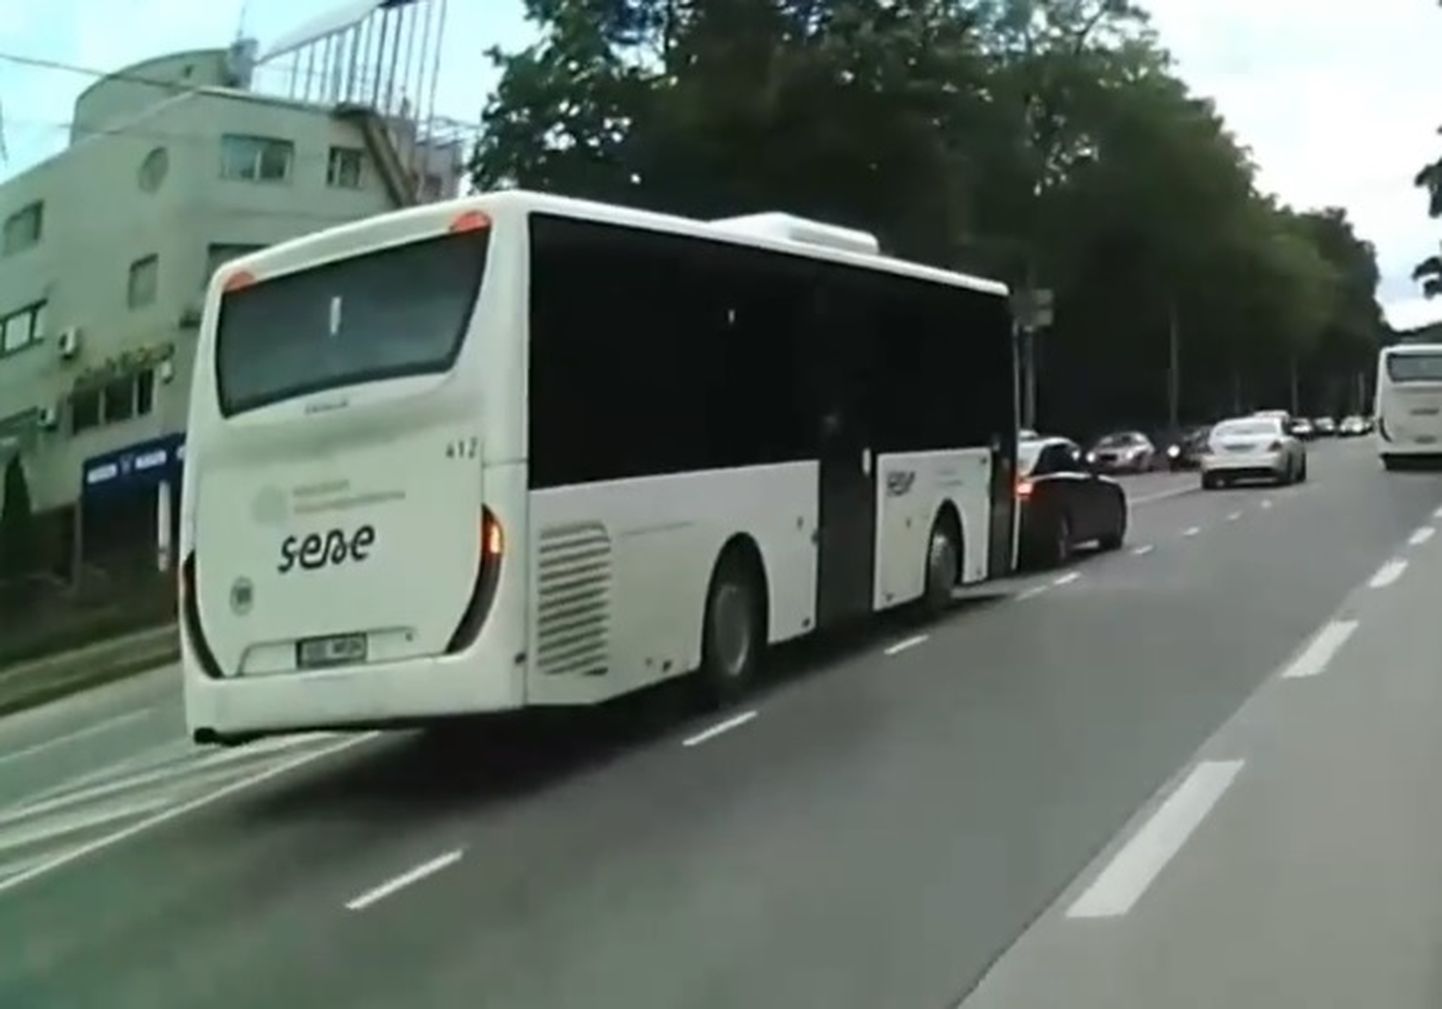 Bussi pidurdama sundinud juht peab nüüd ise kolm kuud bussiga sõitma.